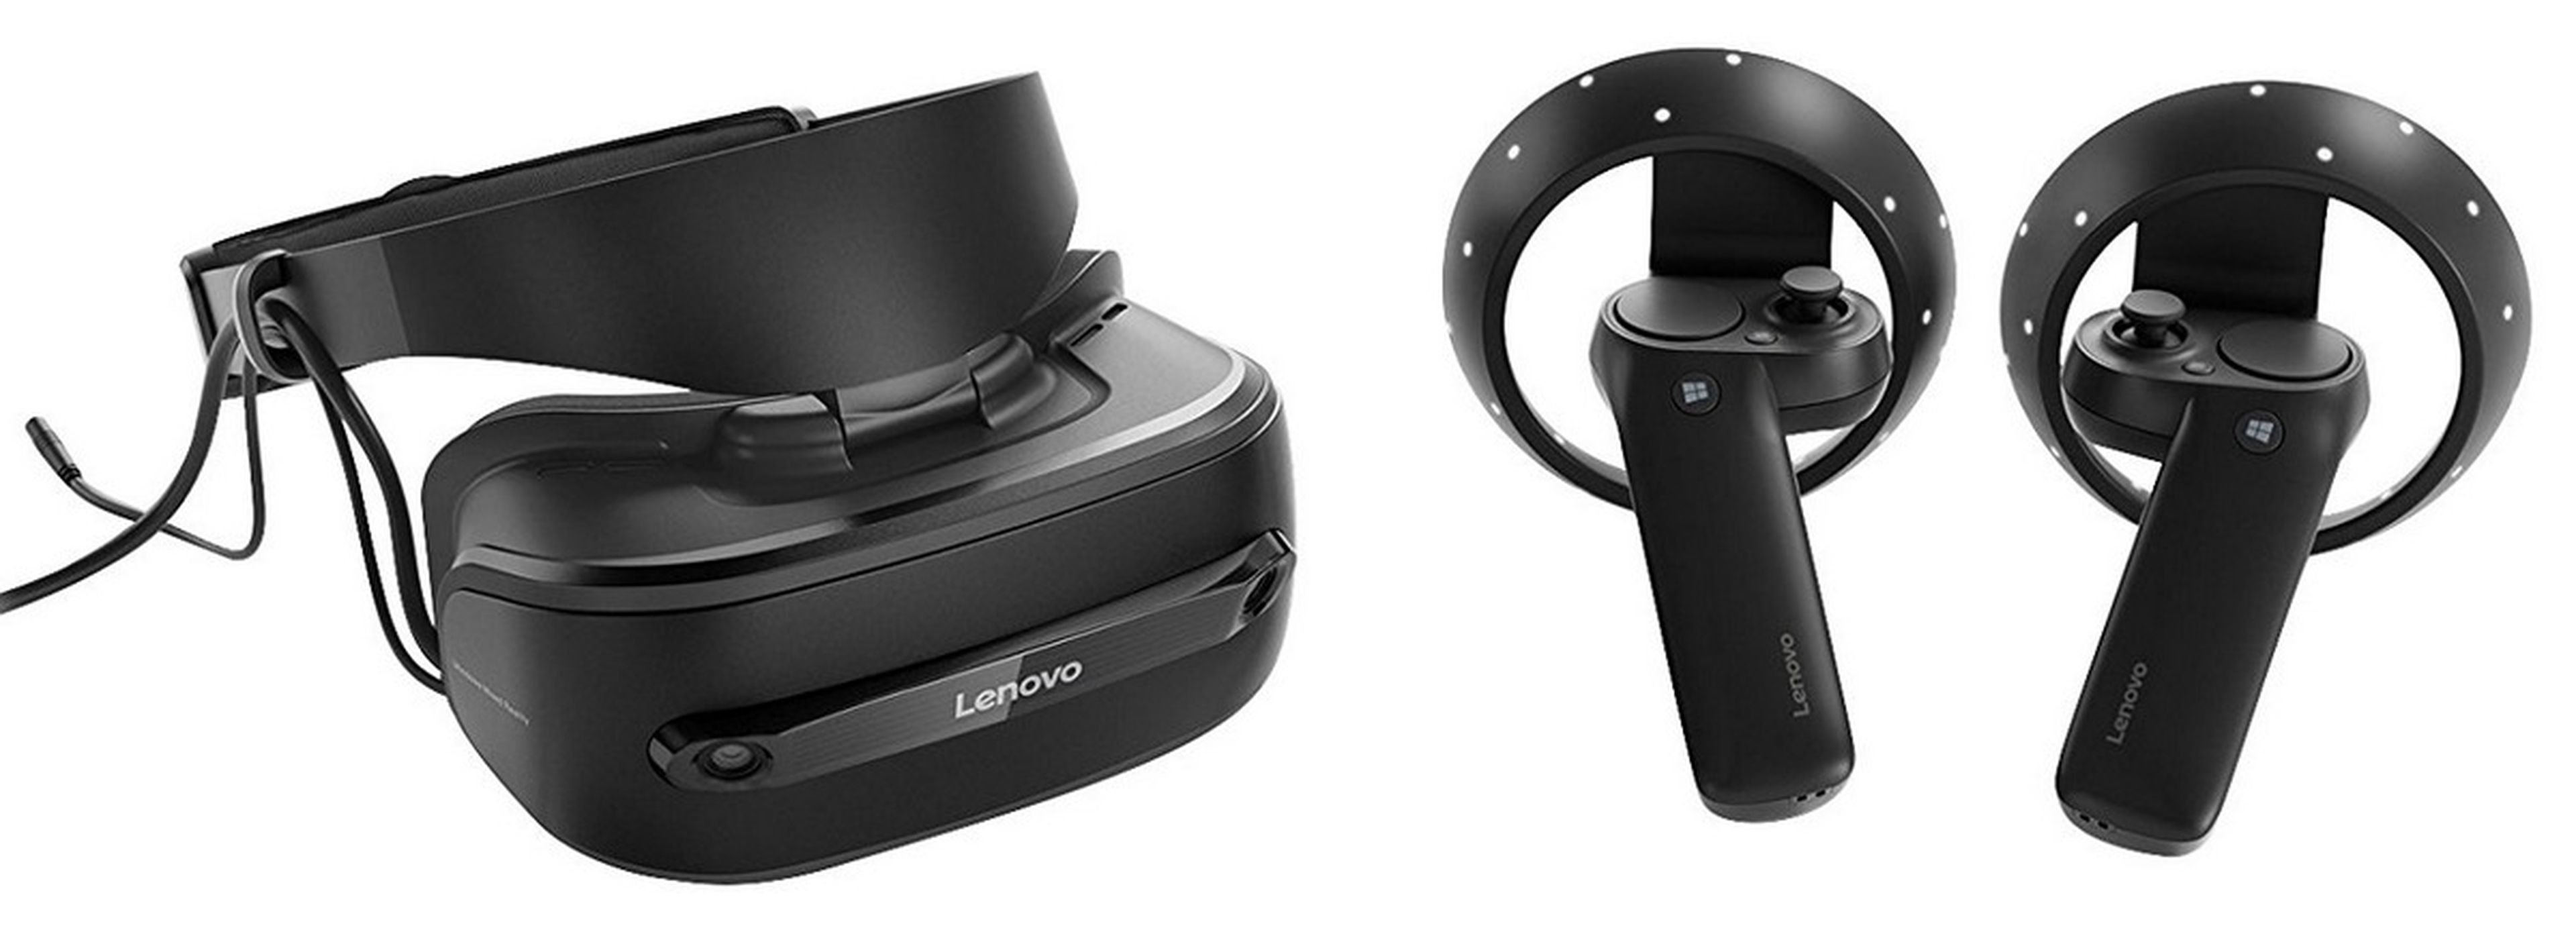 Gafas de Realidad Virtual Lenovo Explorer por 150 euros, y otras ofertas: PS VR, Oculus...